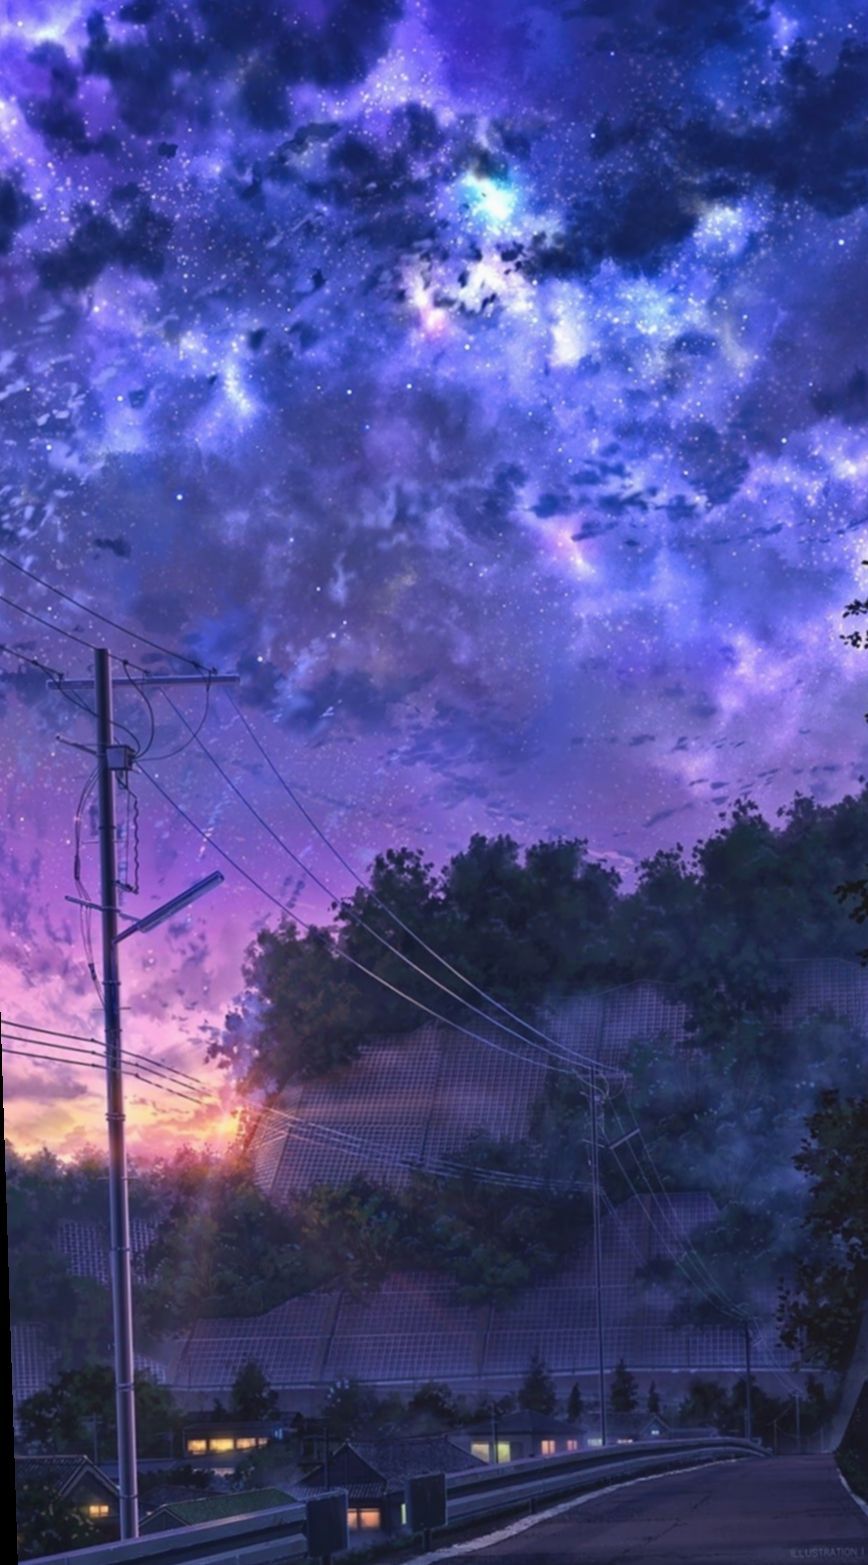 lovlocks | Anime scenery wallpaper, Cute tumblr wallpaper, Aesthetic anime